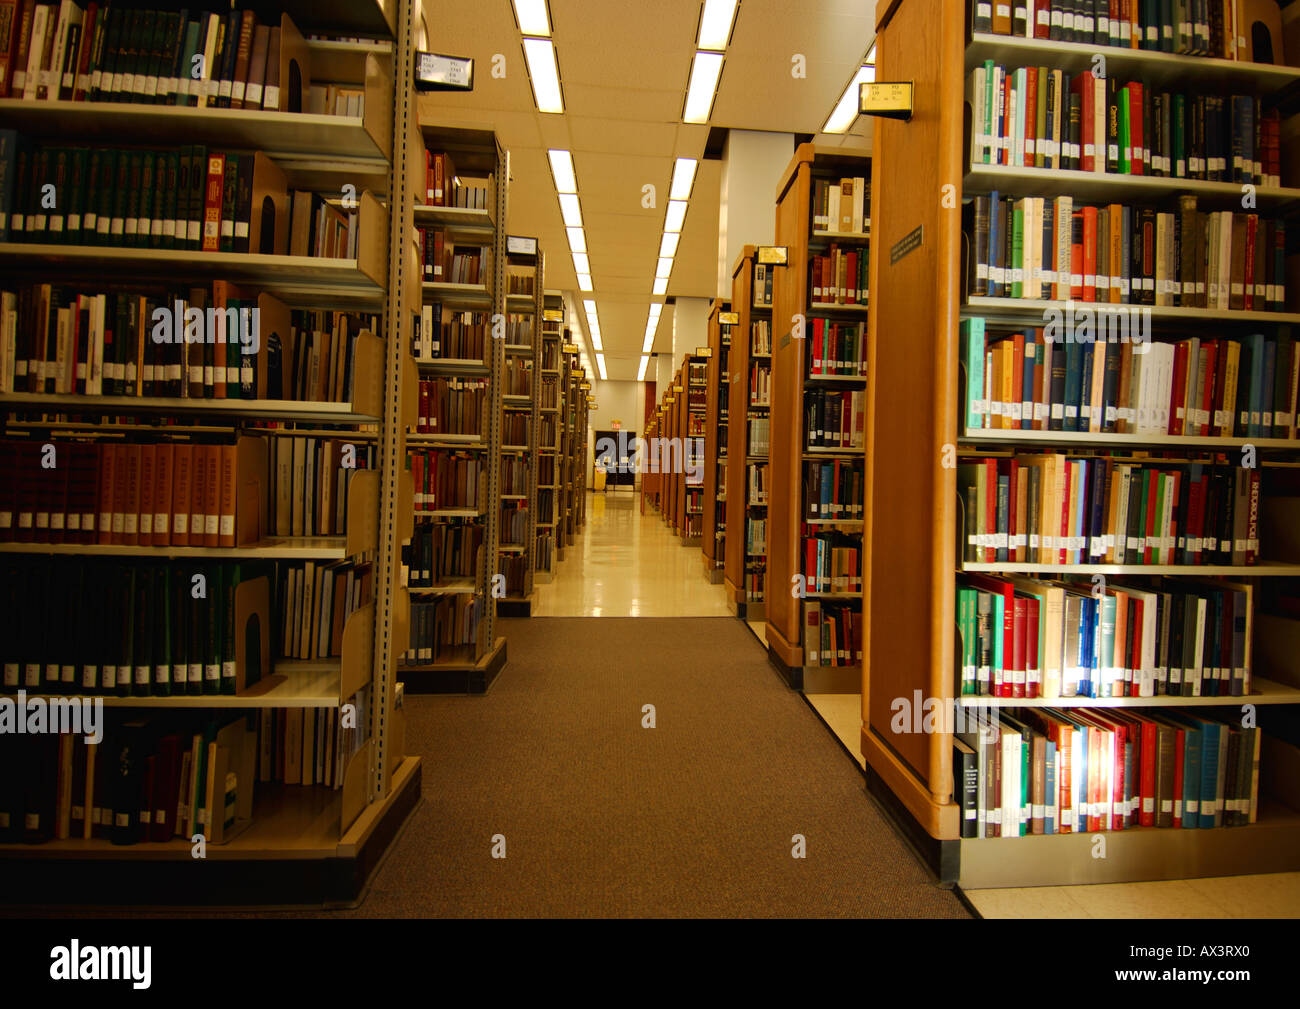 Часть библиотеки 5. RFID В библиотеке. Менеджмент библиотеки. Интеллектуальная библиотека. Библиотека книги менеджмент.